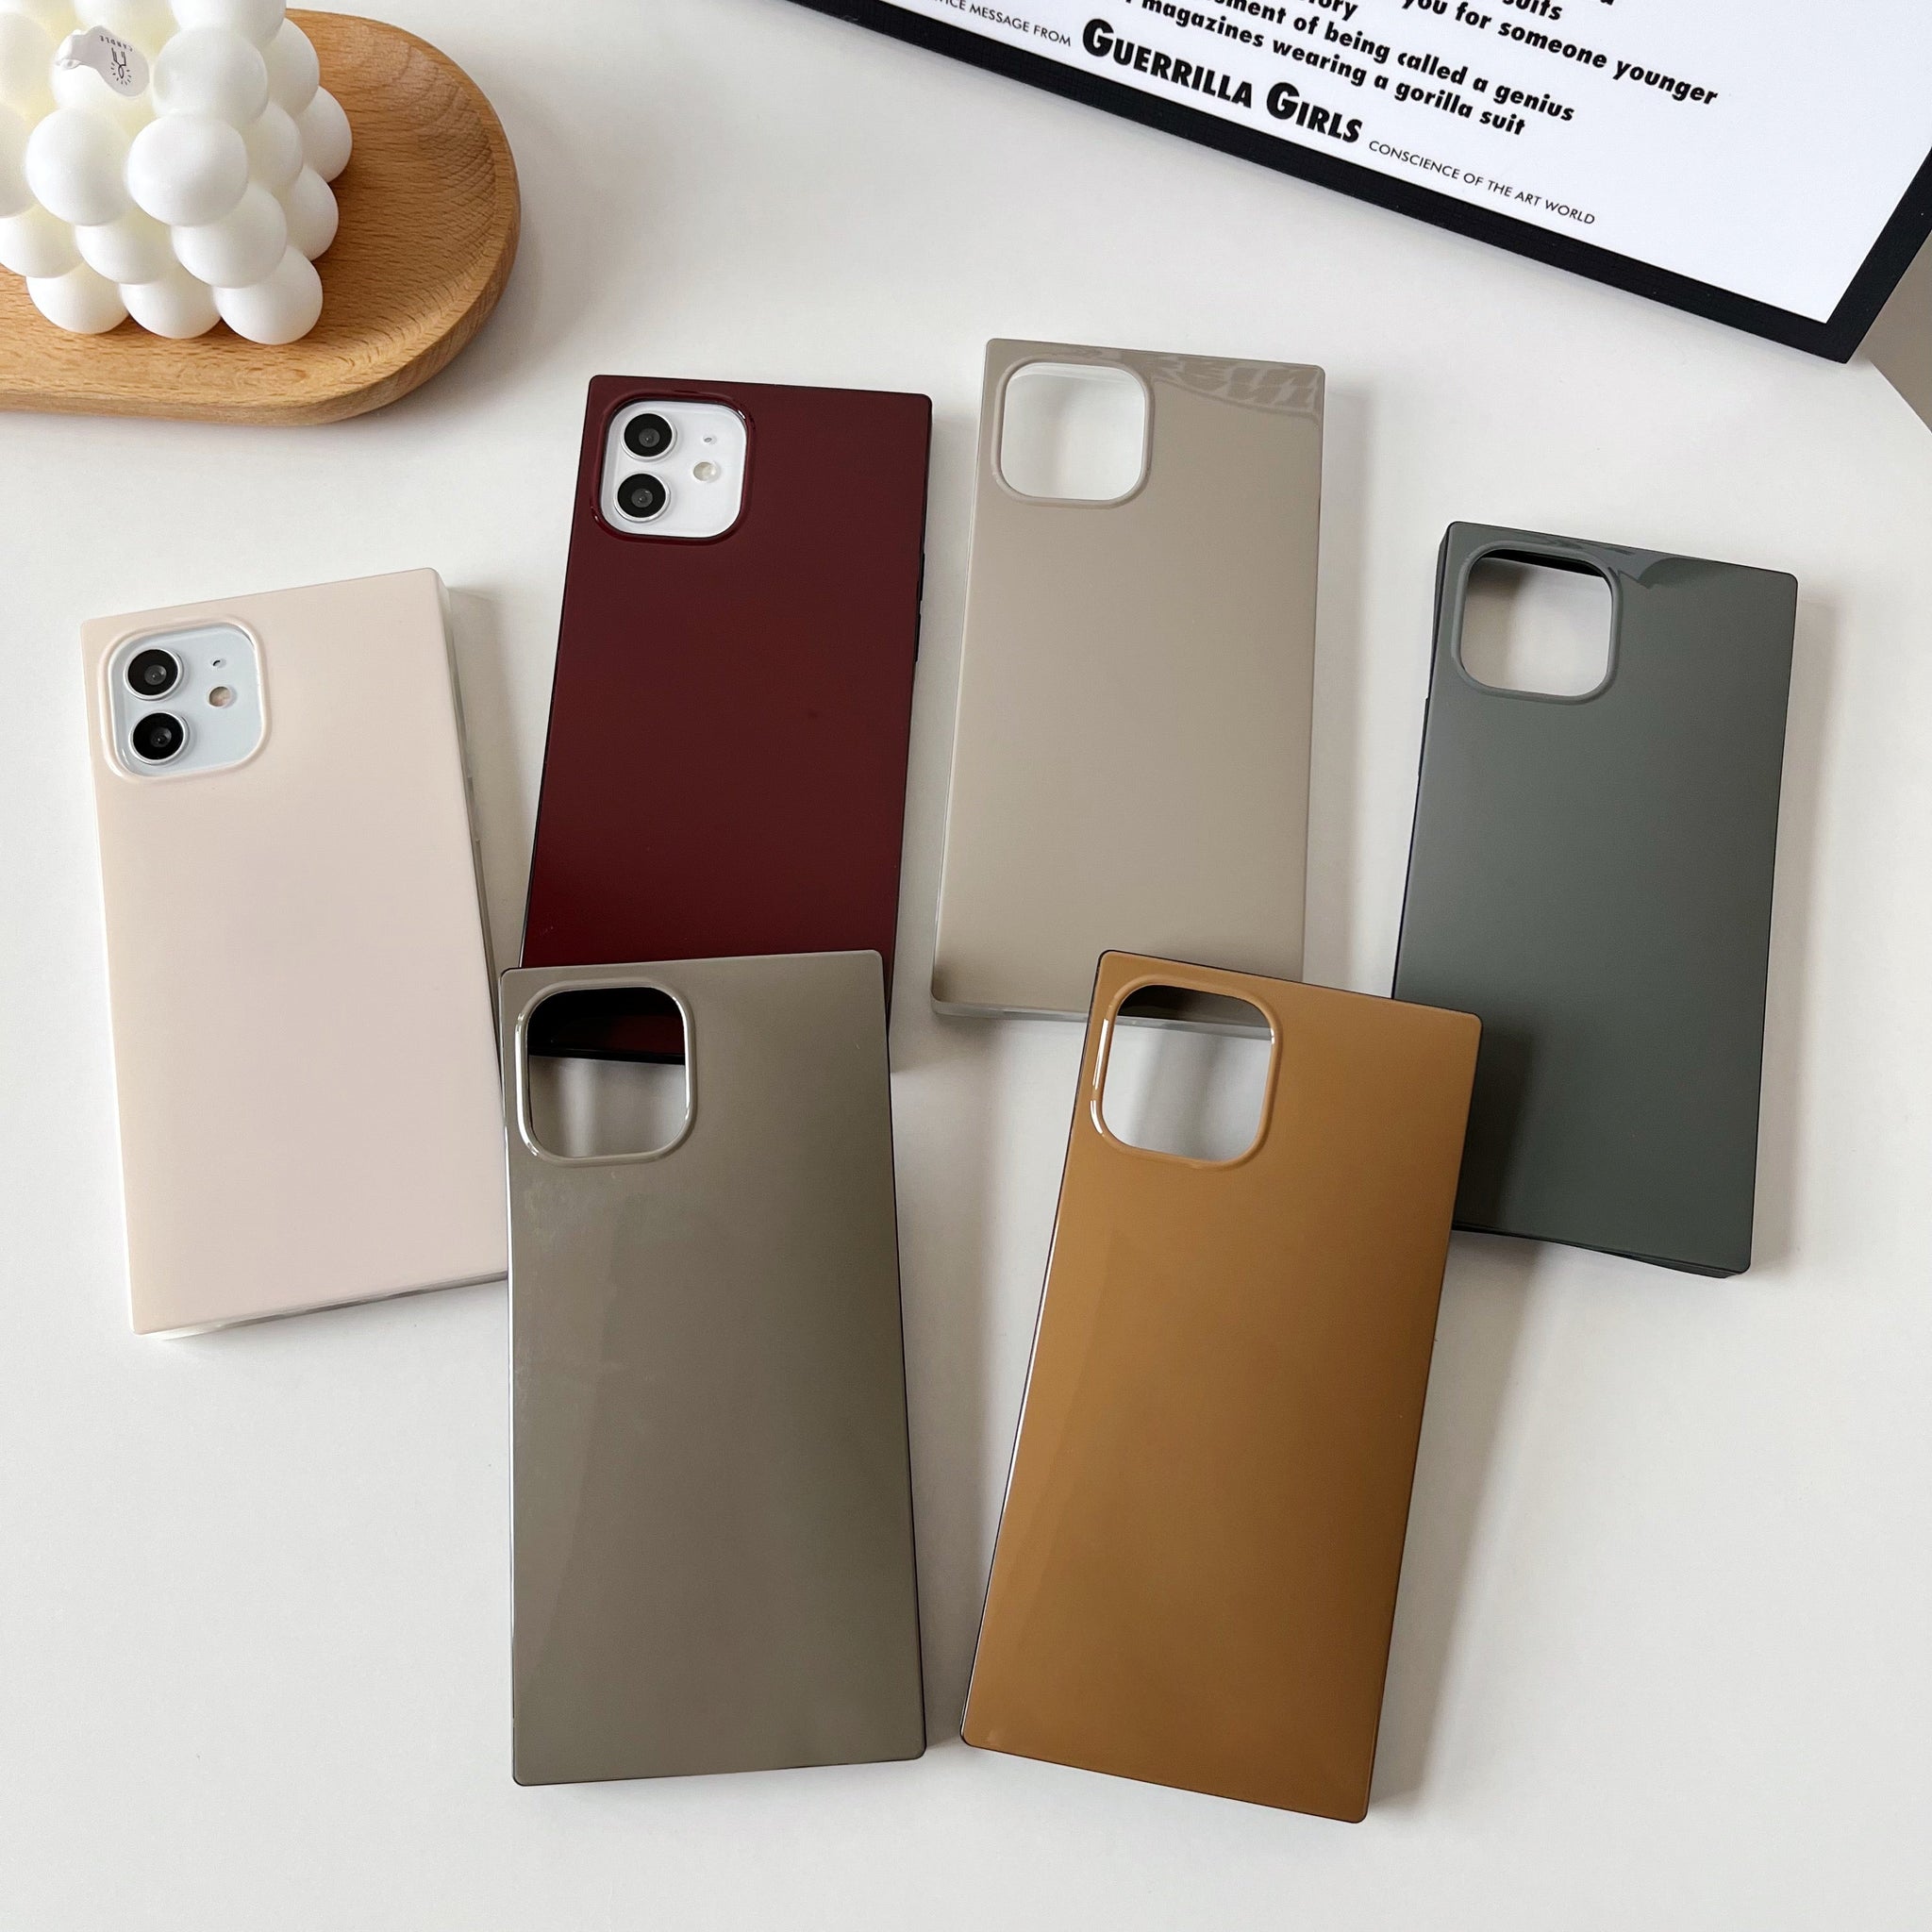 iPhone 11 Pro Case Square Neutral Plain Color (Golden Brown)